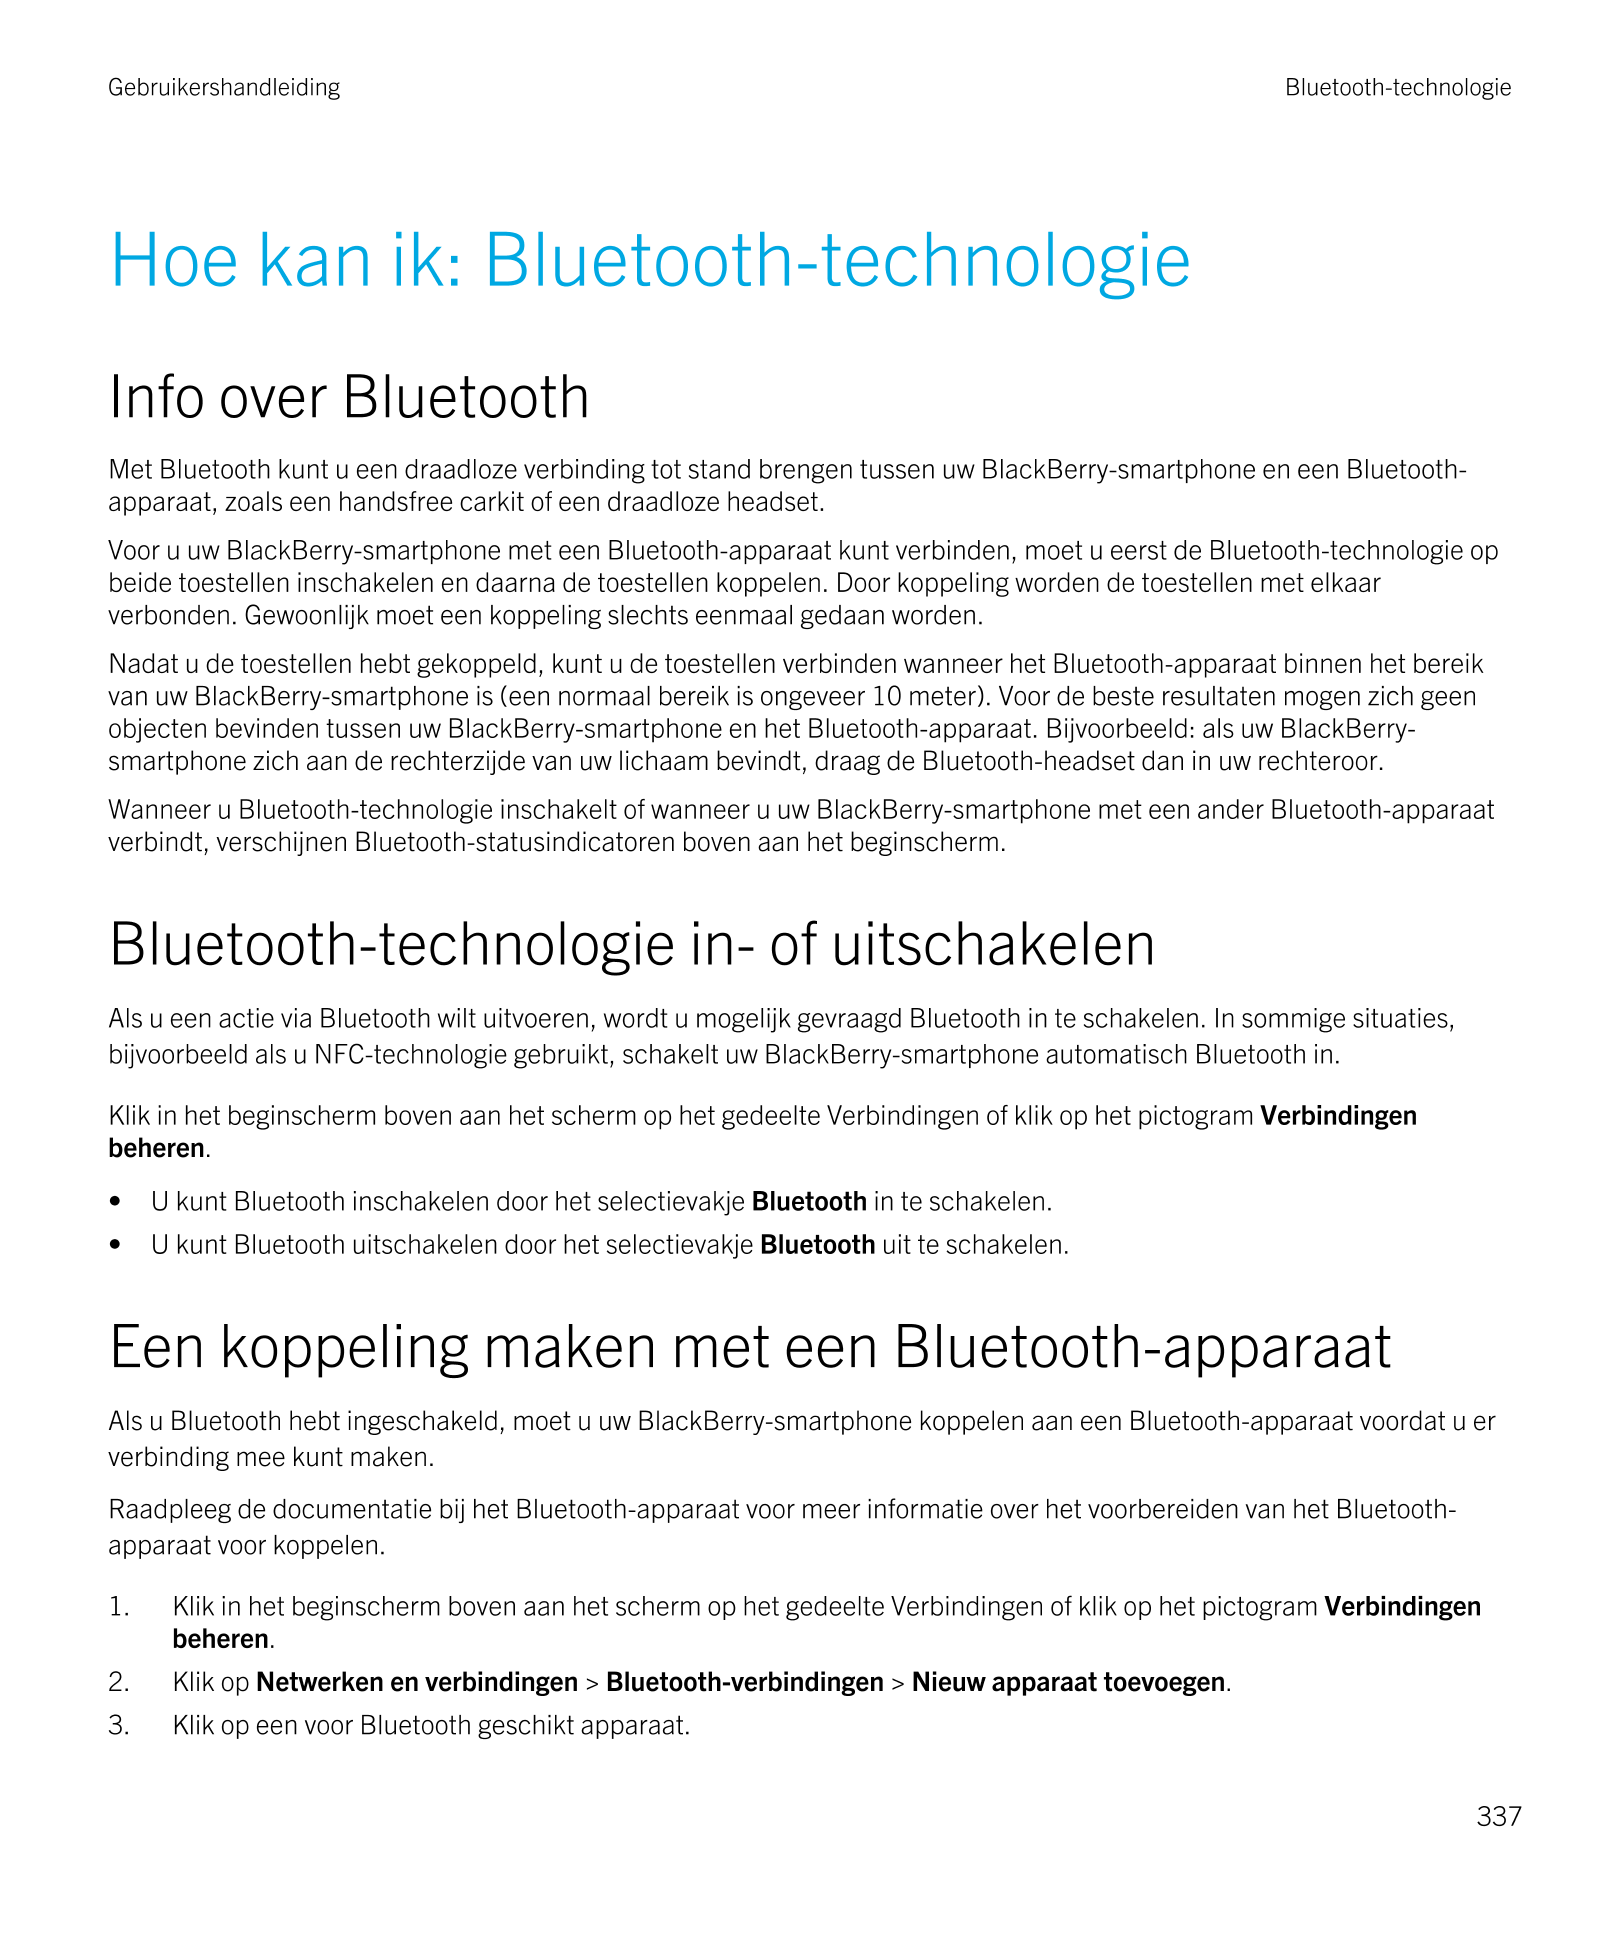 Gebruikershandleiding Bluetooth-technologie
Hoe kan ik:  Bluetooth-technologie
Info over  Bluetooth
Met  Bluetooth kunt u een dr